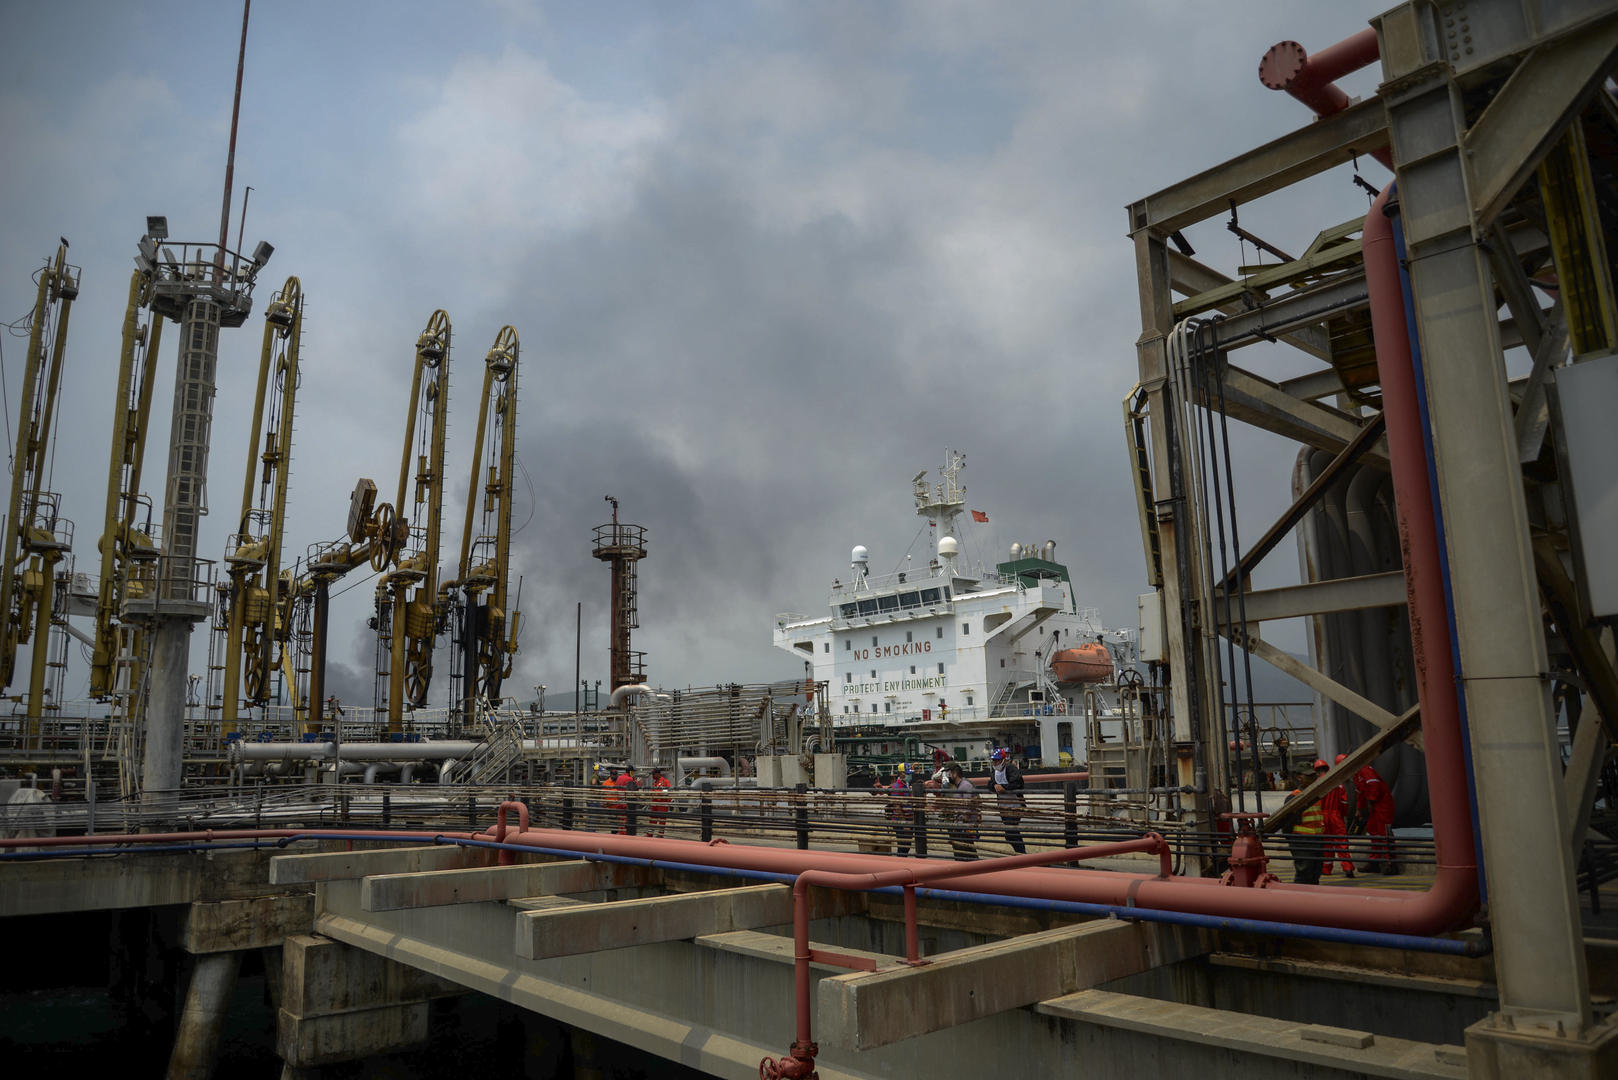 وزير النفط الفنزويلي يعلن إحباط مخطط للهجوم على منشأة نفطية في البلاد